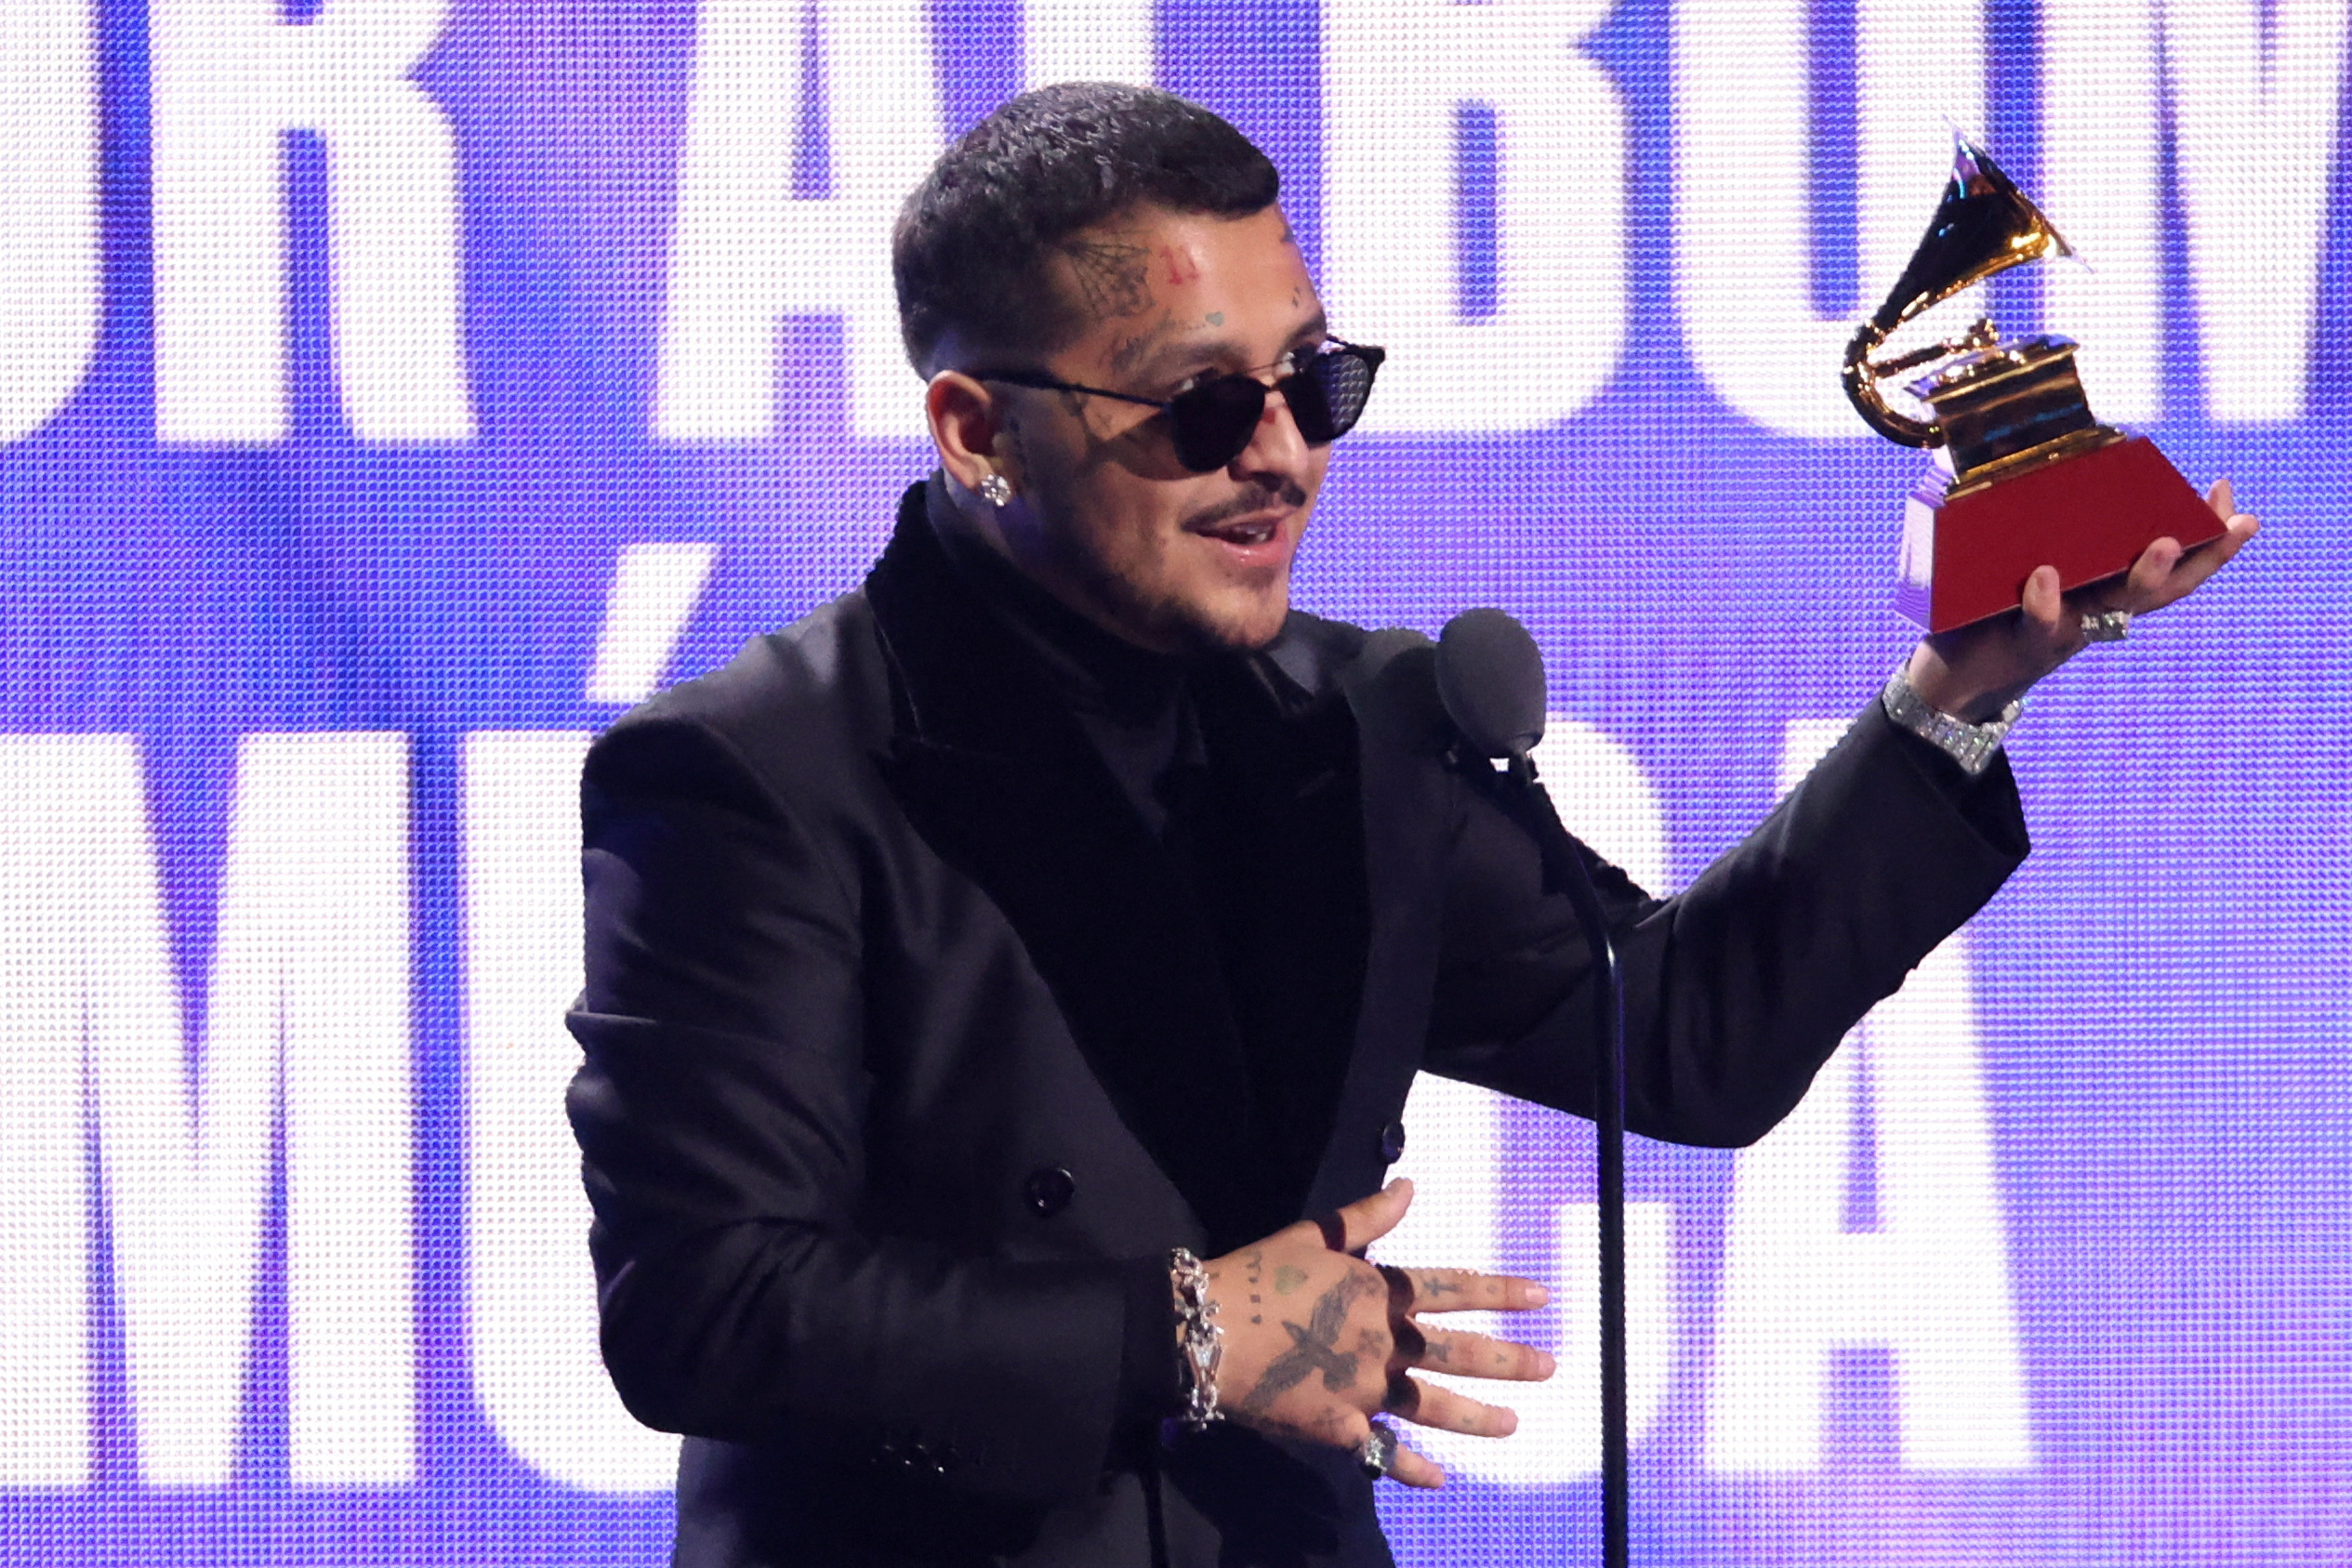 Christian Nodal recibió el premio a "Mejor Álbum Ranchero/Mariachi" por "Ep #1 Forajido" en la 23ª Entrega Anual de los premios Latin Grammy que se llevaron a cabo en Las Vegas. (Foto: REUTERS/Mario Anzuoni)